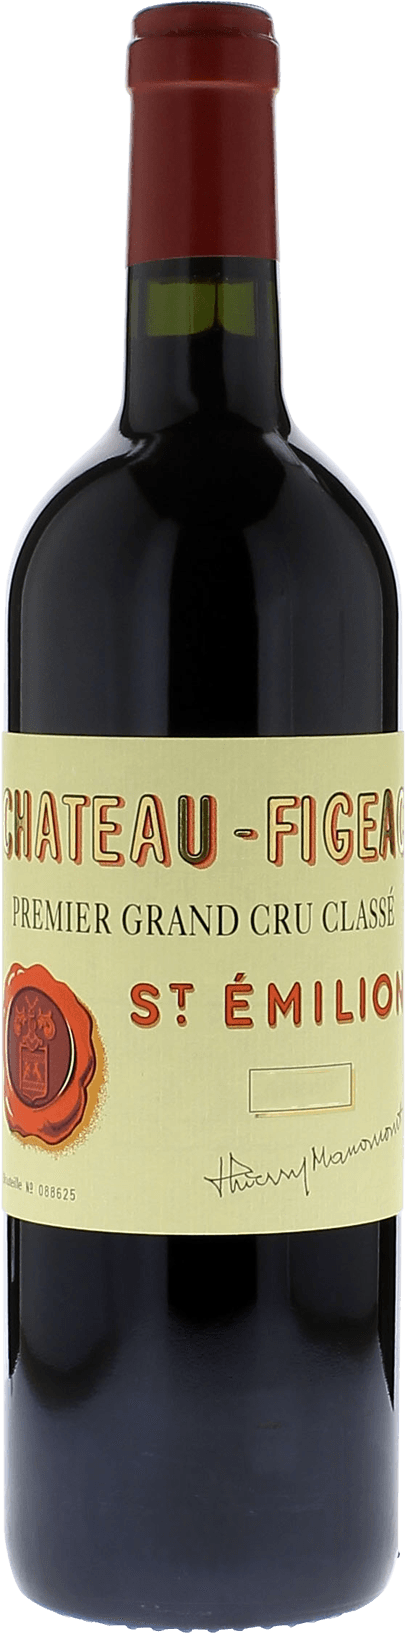 Figeac 2014 1er Grand cru class Saint-Emilion, Bordeaux rouge